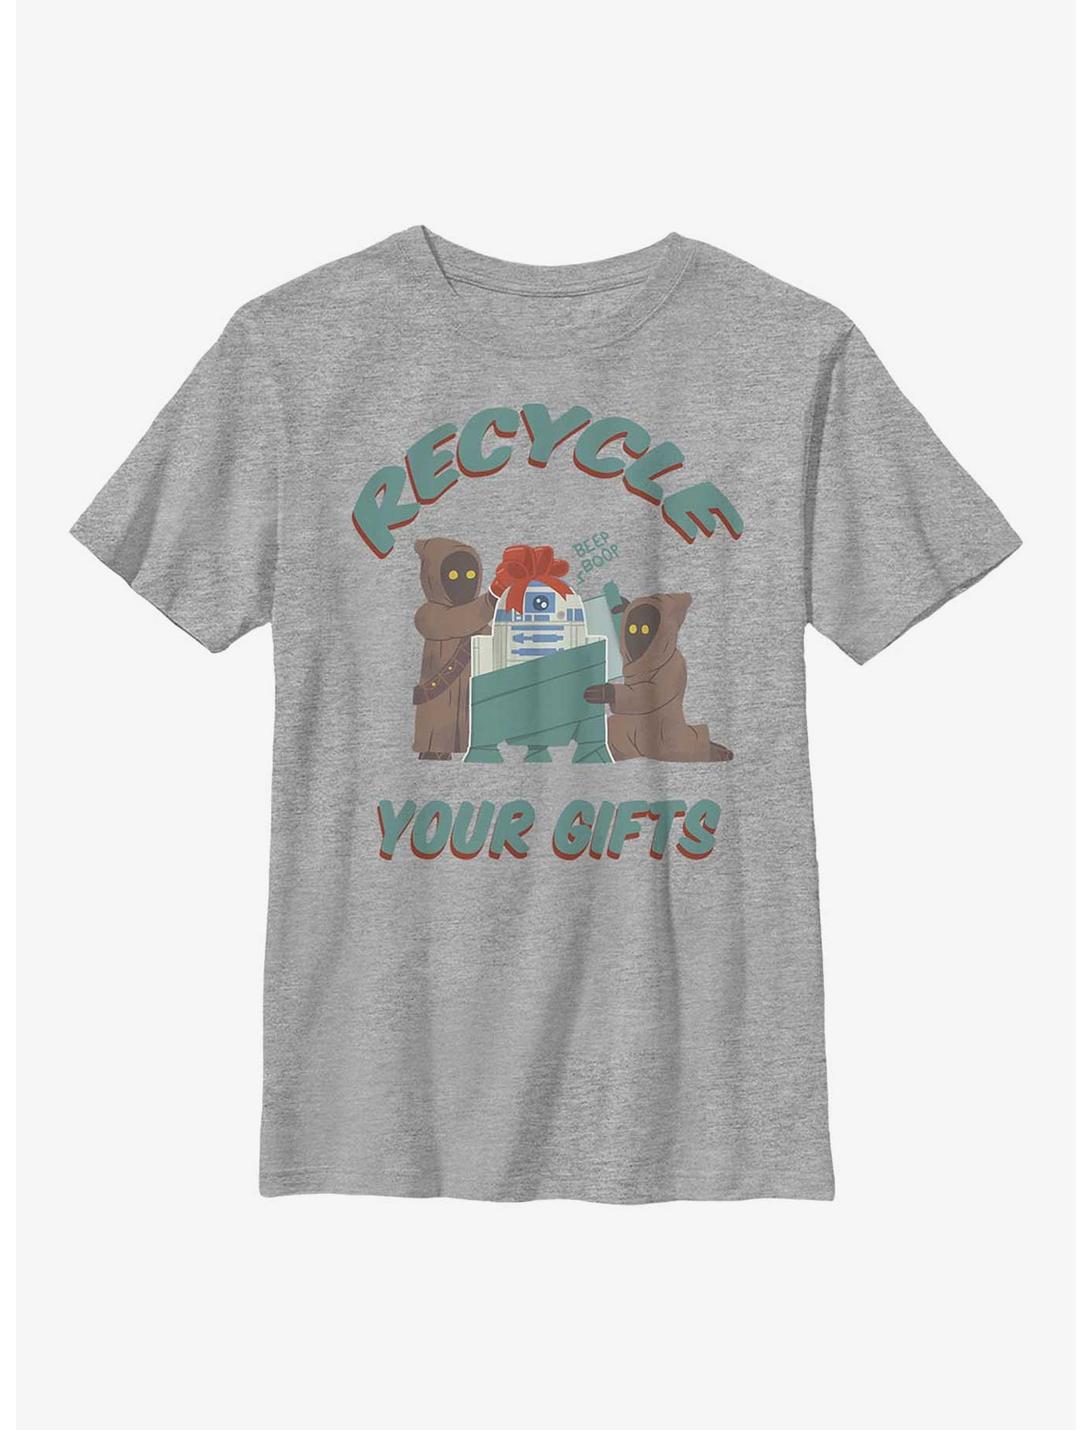 Star Wars Jawa Recycle Gifts Youth T-Shirt, ATH HTR, hi-res